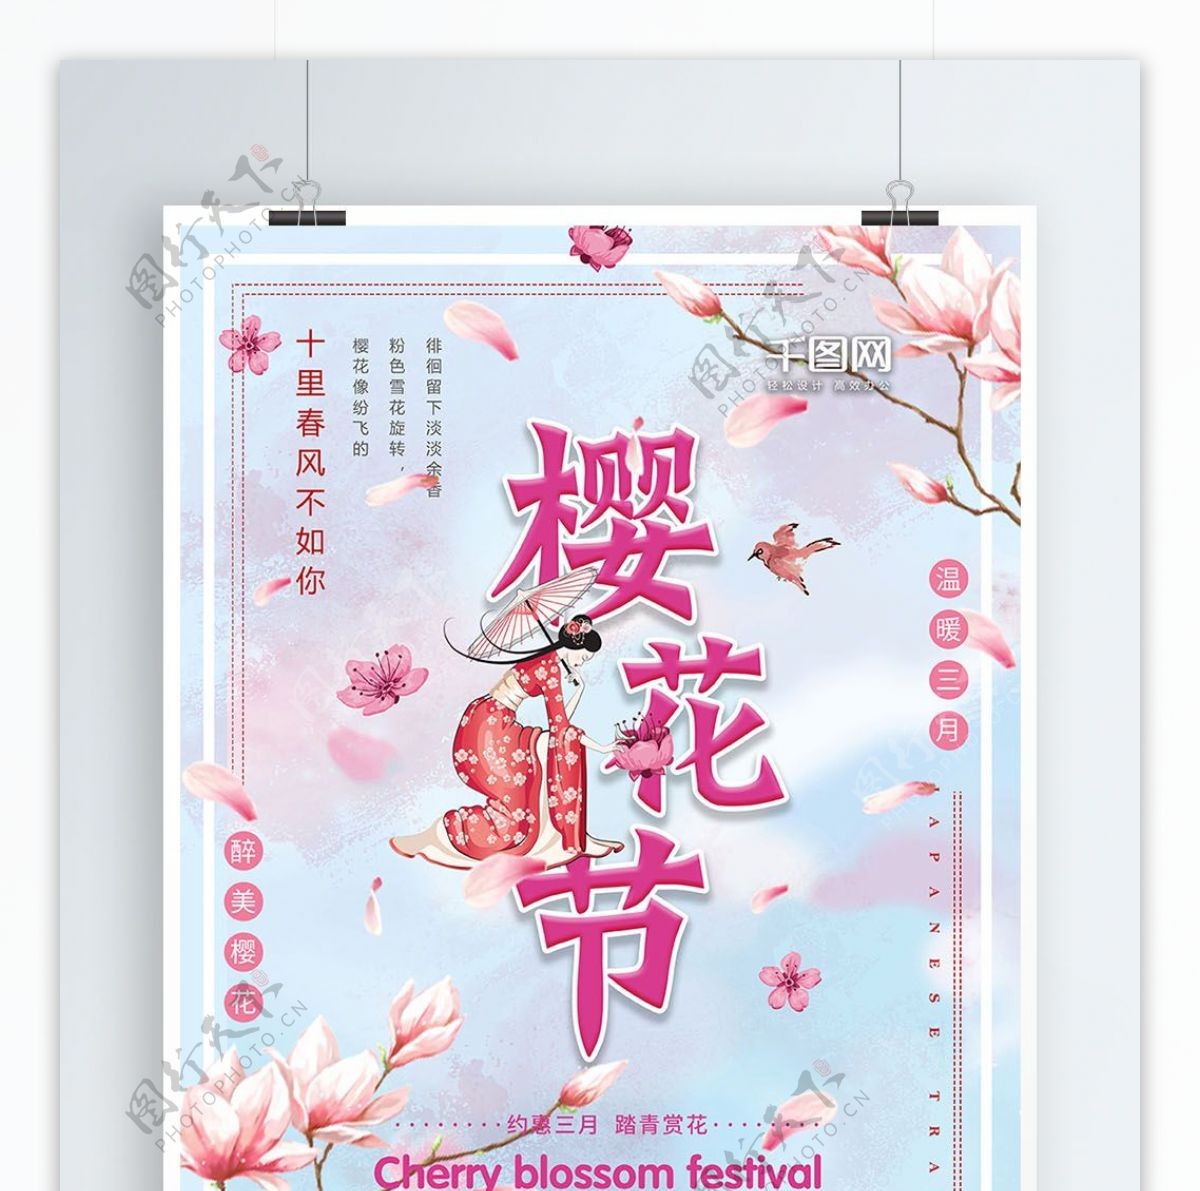 唯美浪漫小清新樱花节节日海报设计